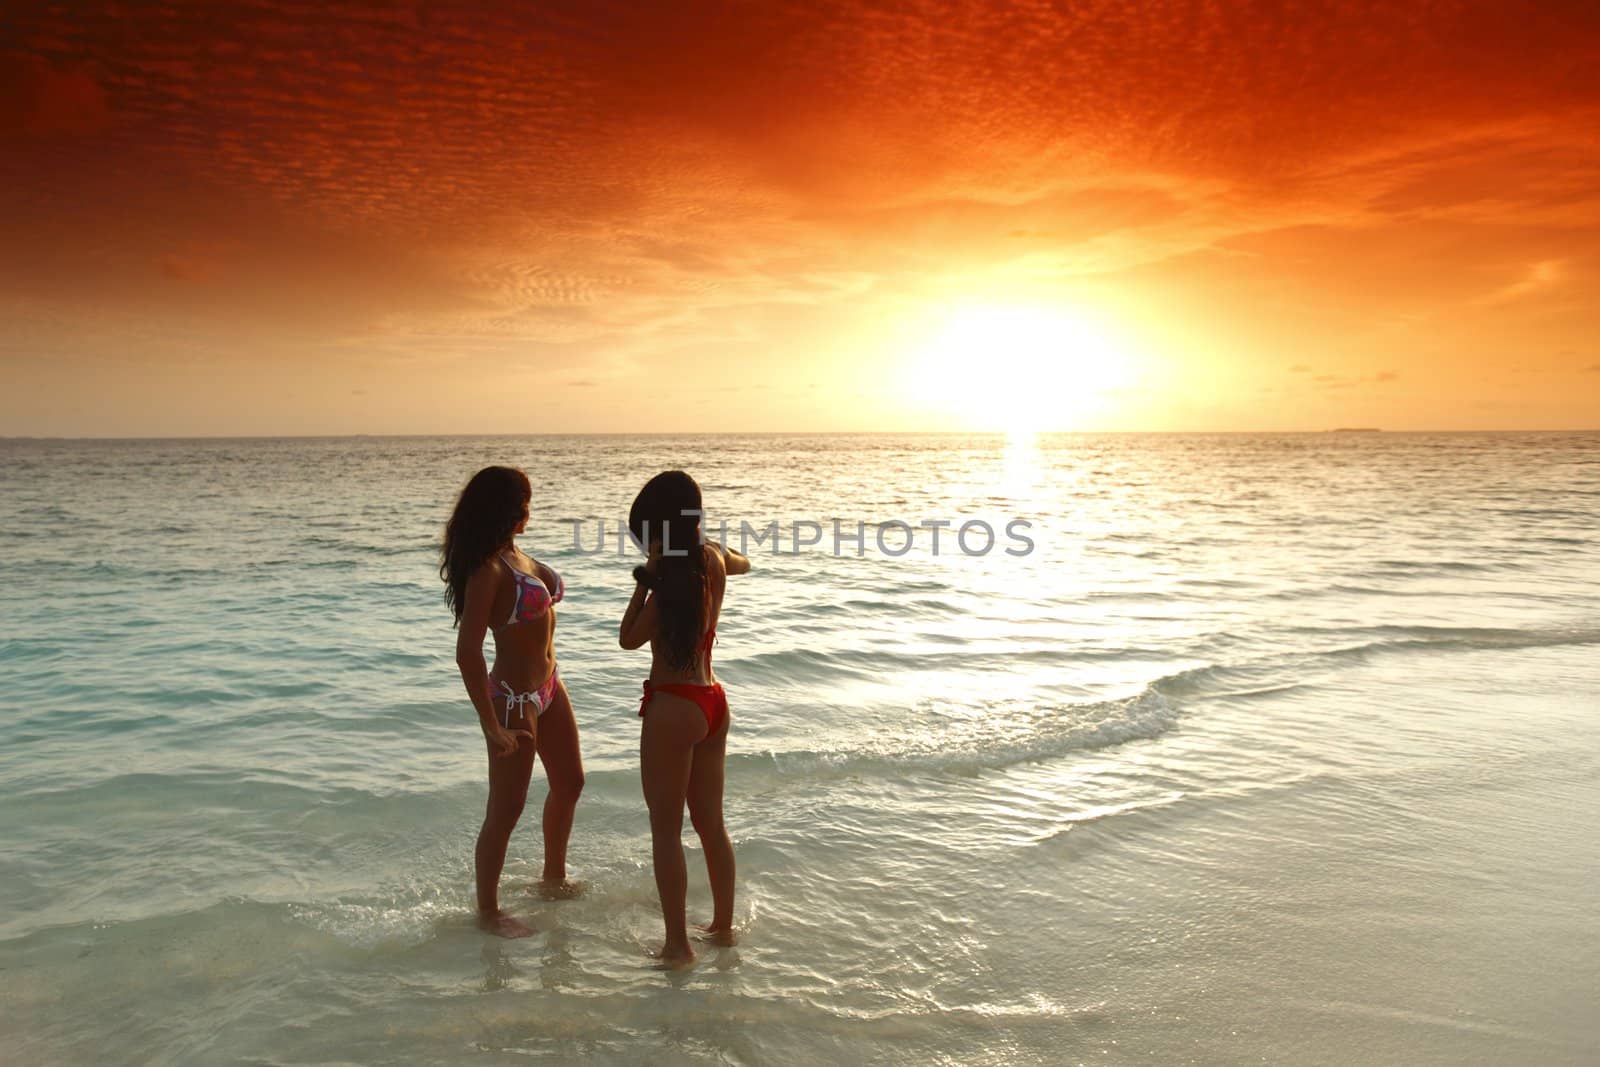 Two women enjoying sunset on beach by Yellowj